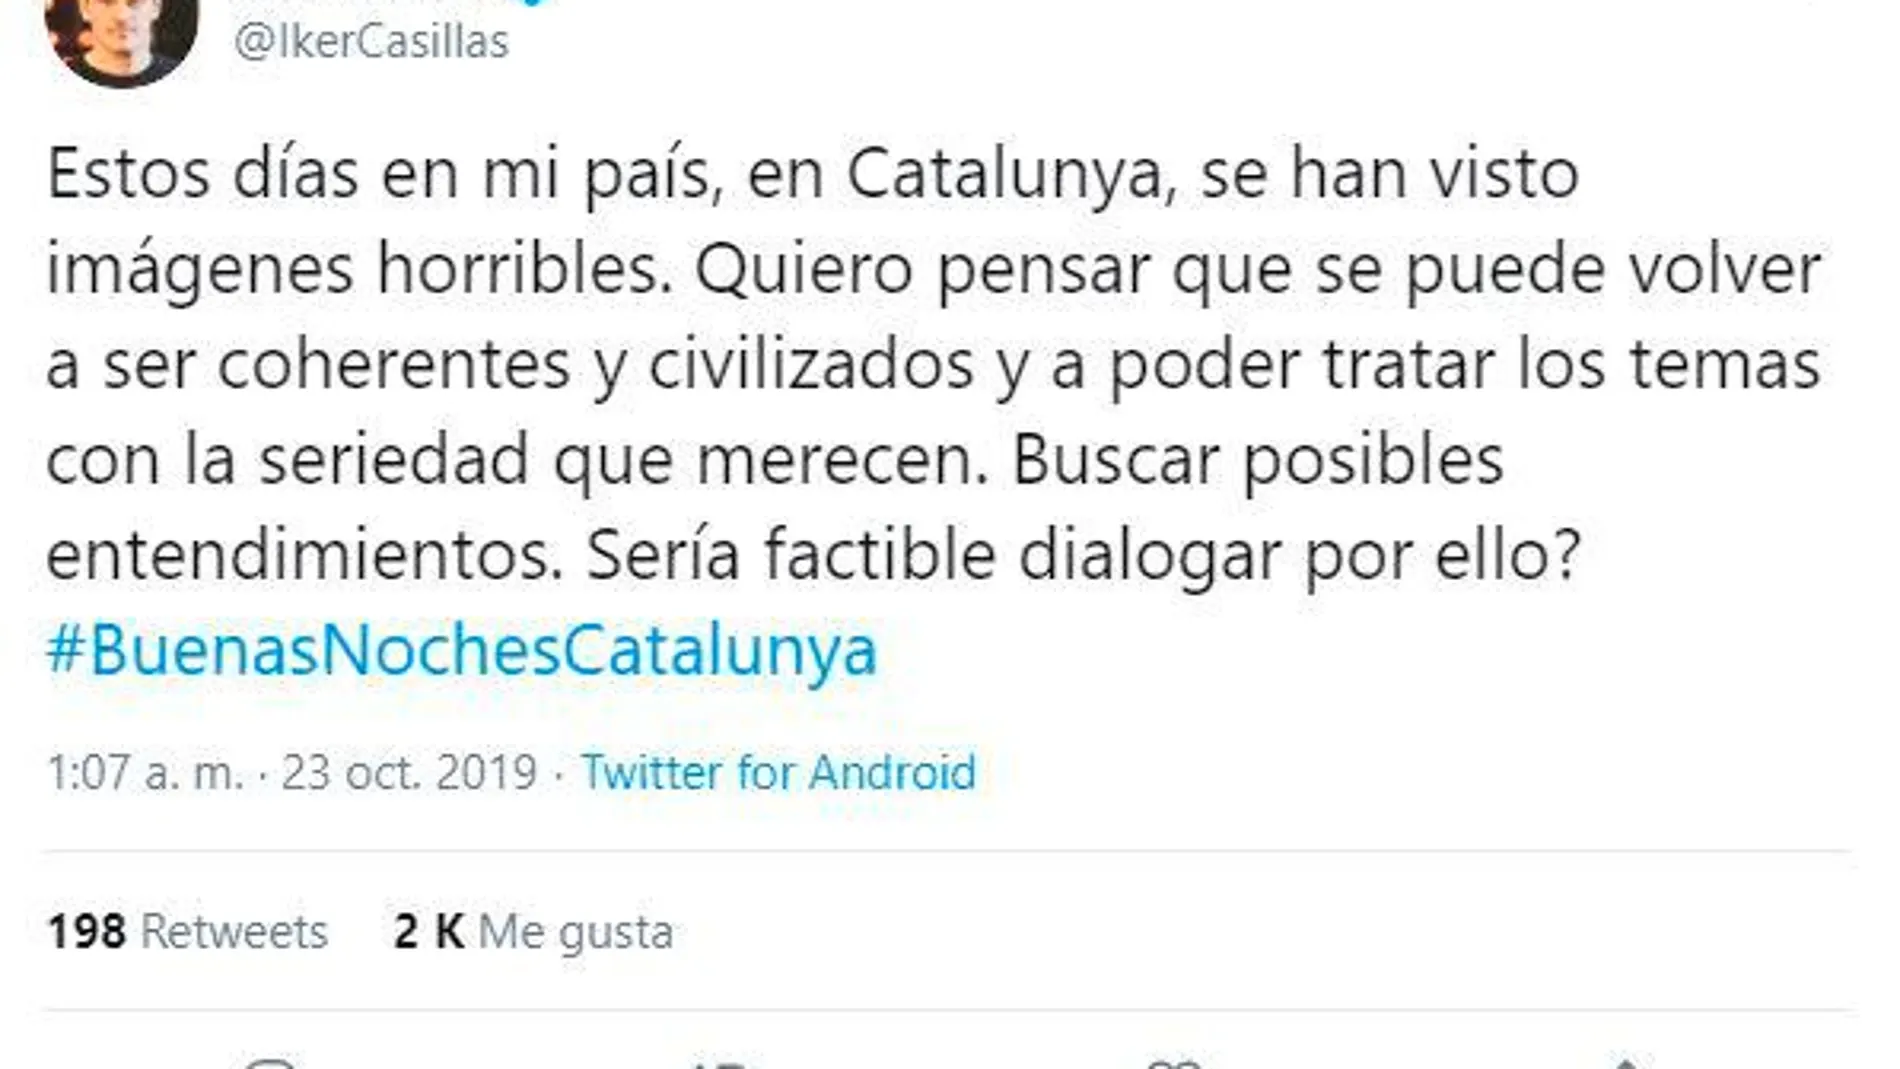 Iker Casillas la lía en Twitter al escribir Catalunya sin ñ